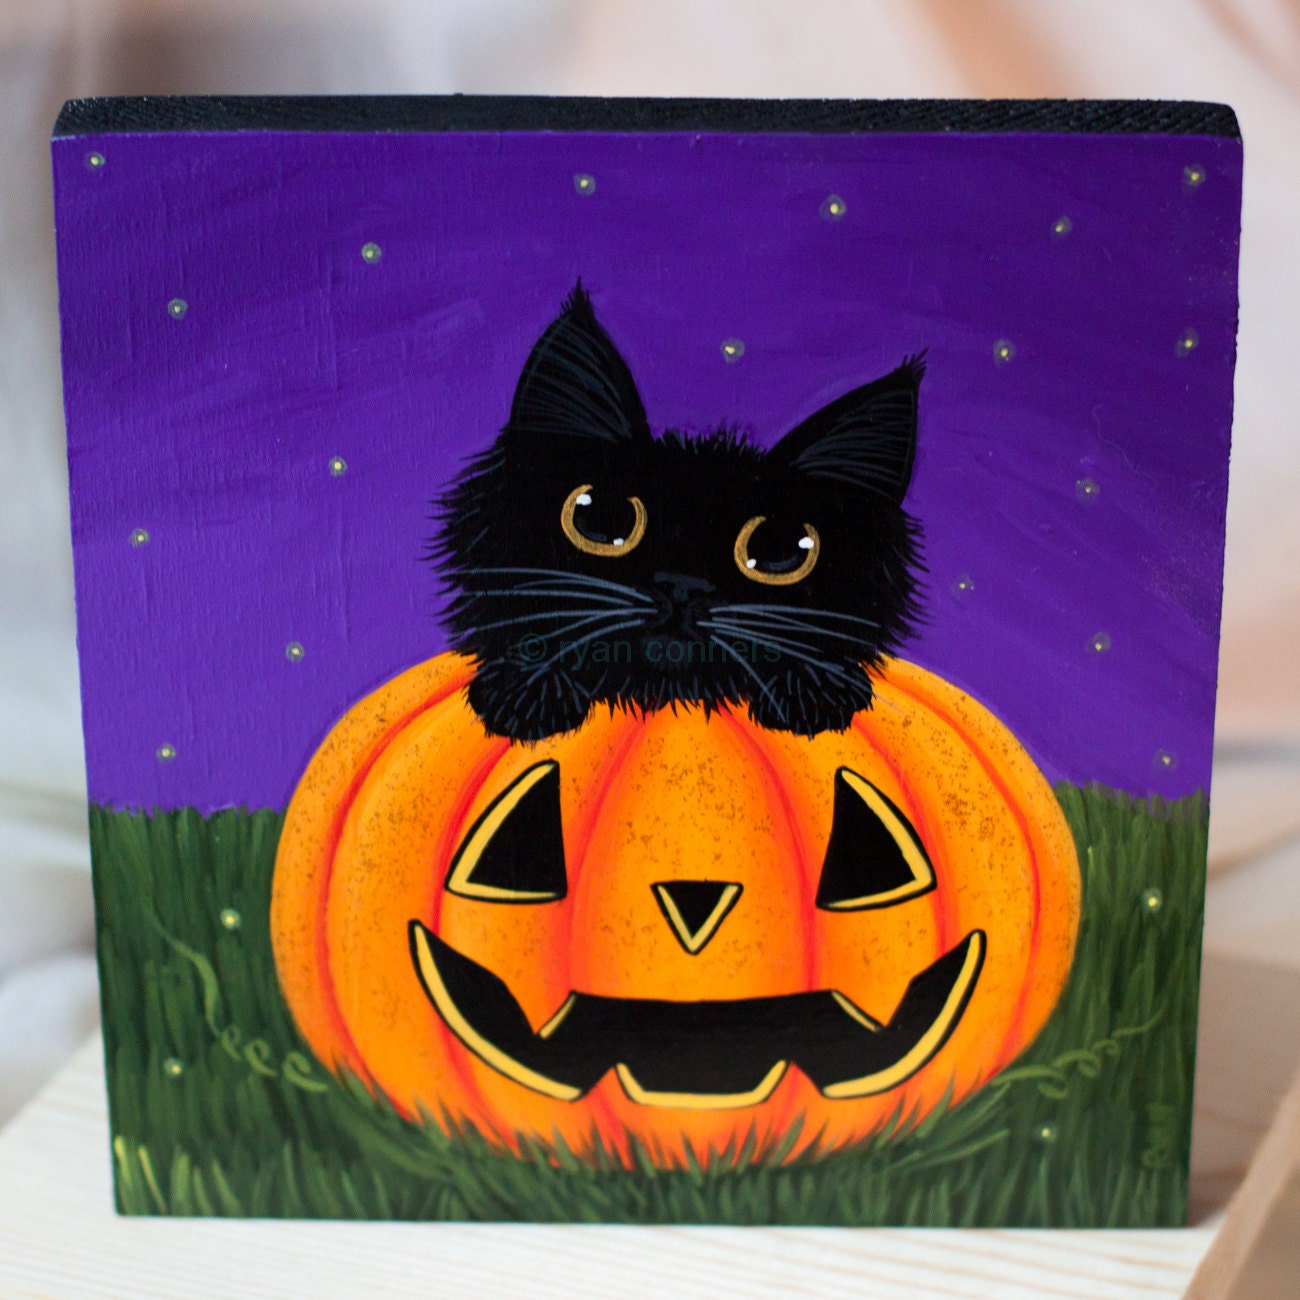 Black Cat in a Pumpkin Original Halloween Folk Art Painting